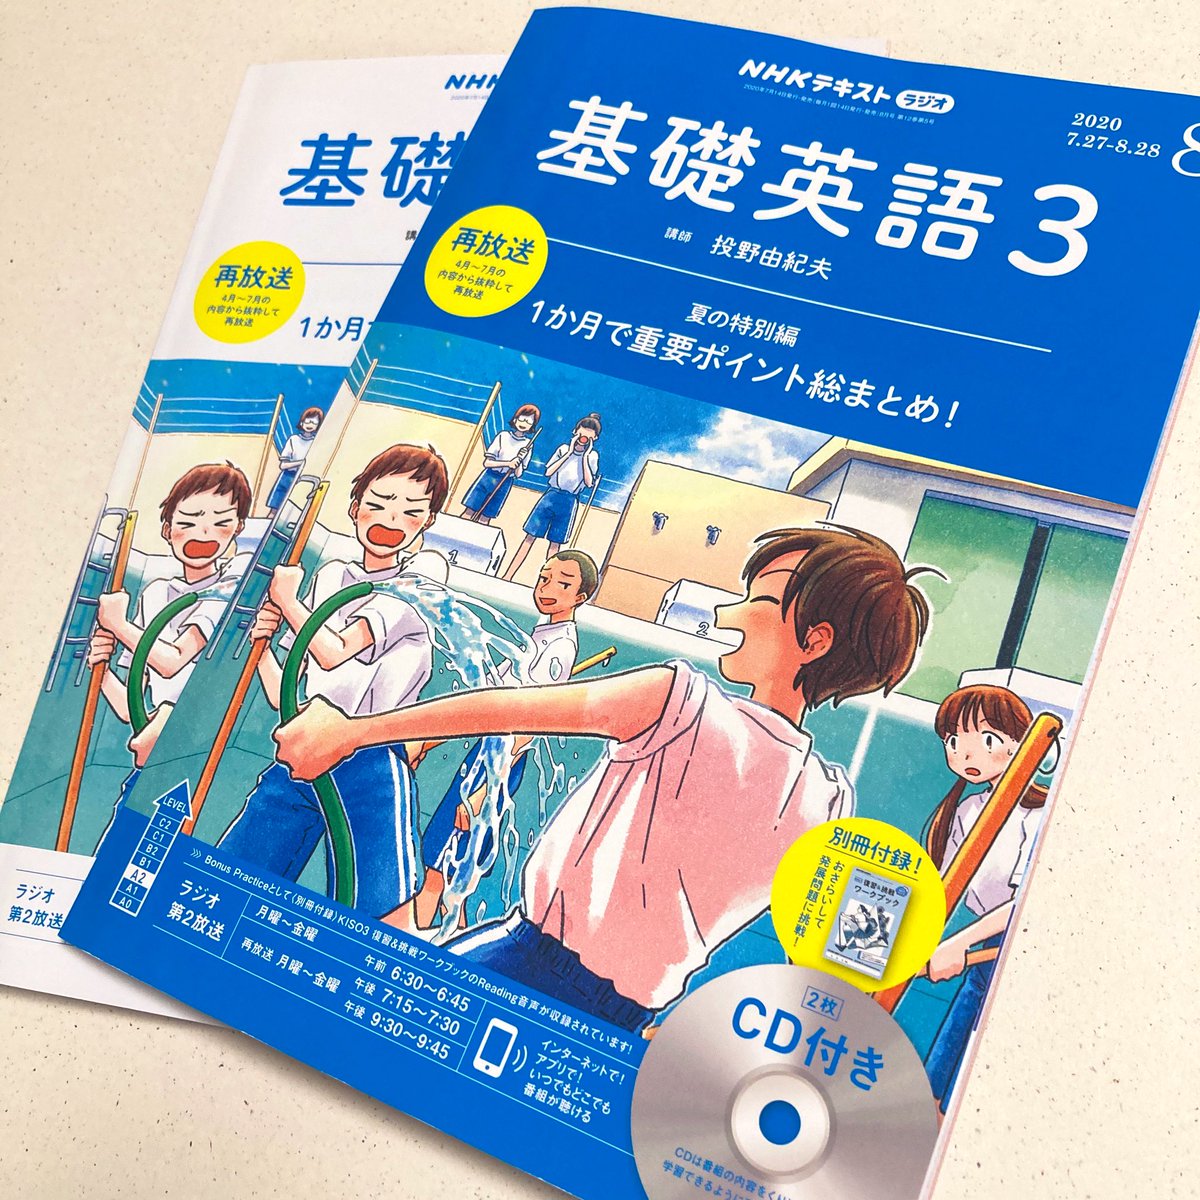 《お仕事》
NHKテキスト 基礎英語3
8月号も発売されております。
今月号は4〜7月までのおさらいと、復習&挑戦ワークブックの付録がセットです?

今月もどうぞよろしくお願いします◎

https://t.co/3ePlwW8YeH 